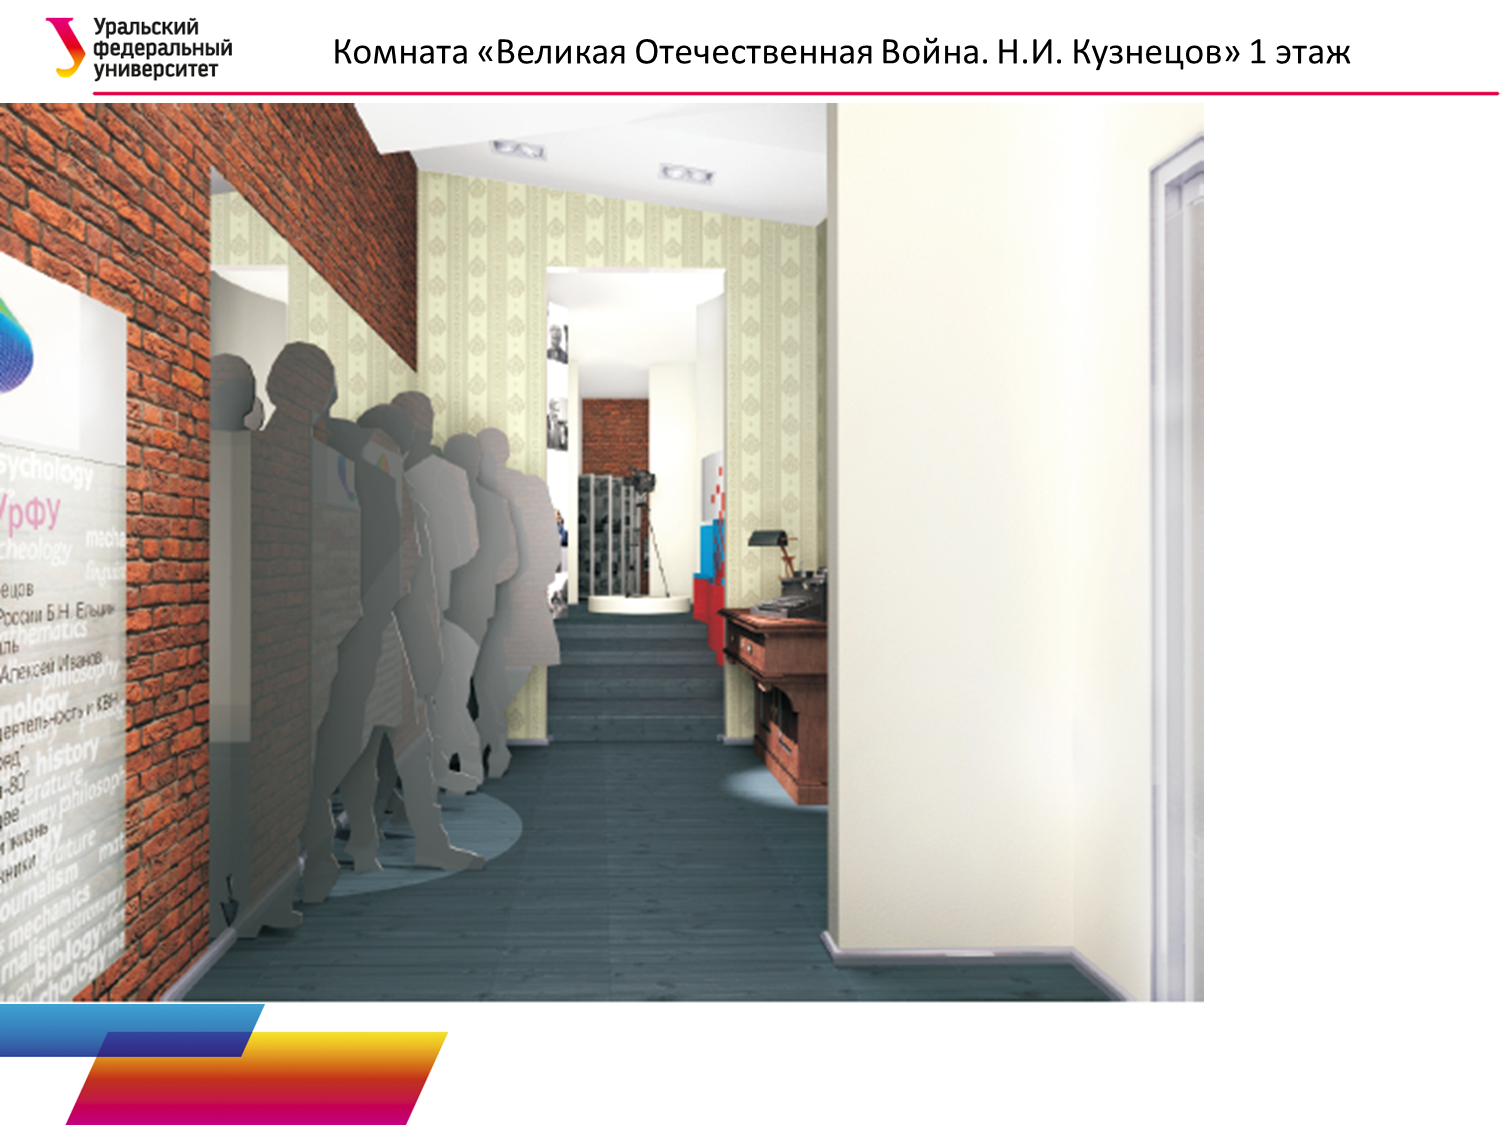 Президент Ельцин, разведчик Кузнецов и писатель Иванов под одной крышей — УрФУ создает новый инновационный музей - Фото 4